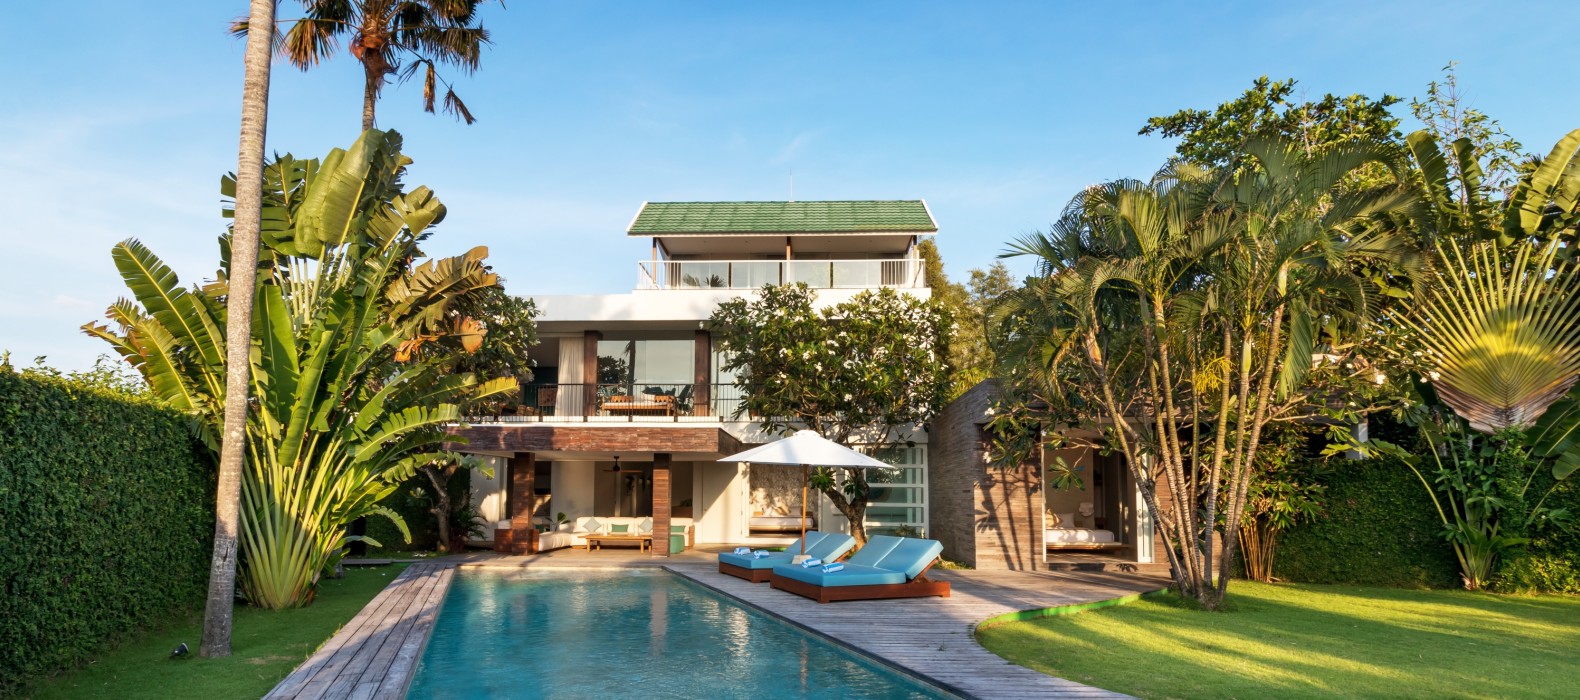 Exterior villa view of Villa Nuria in Bali